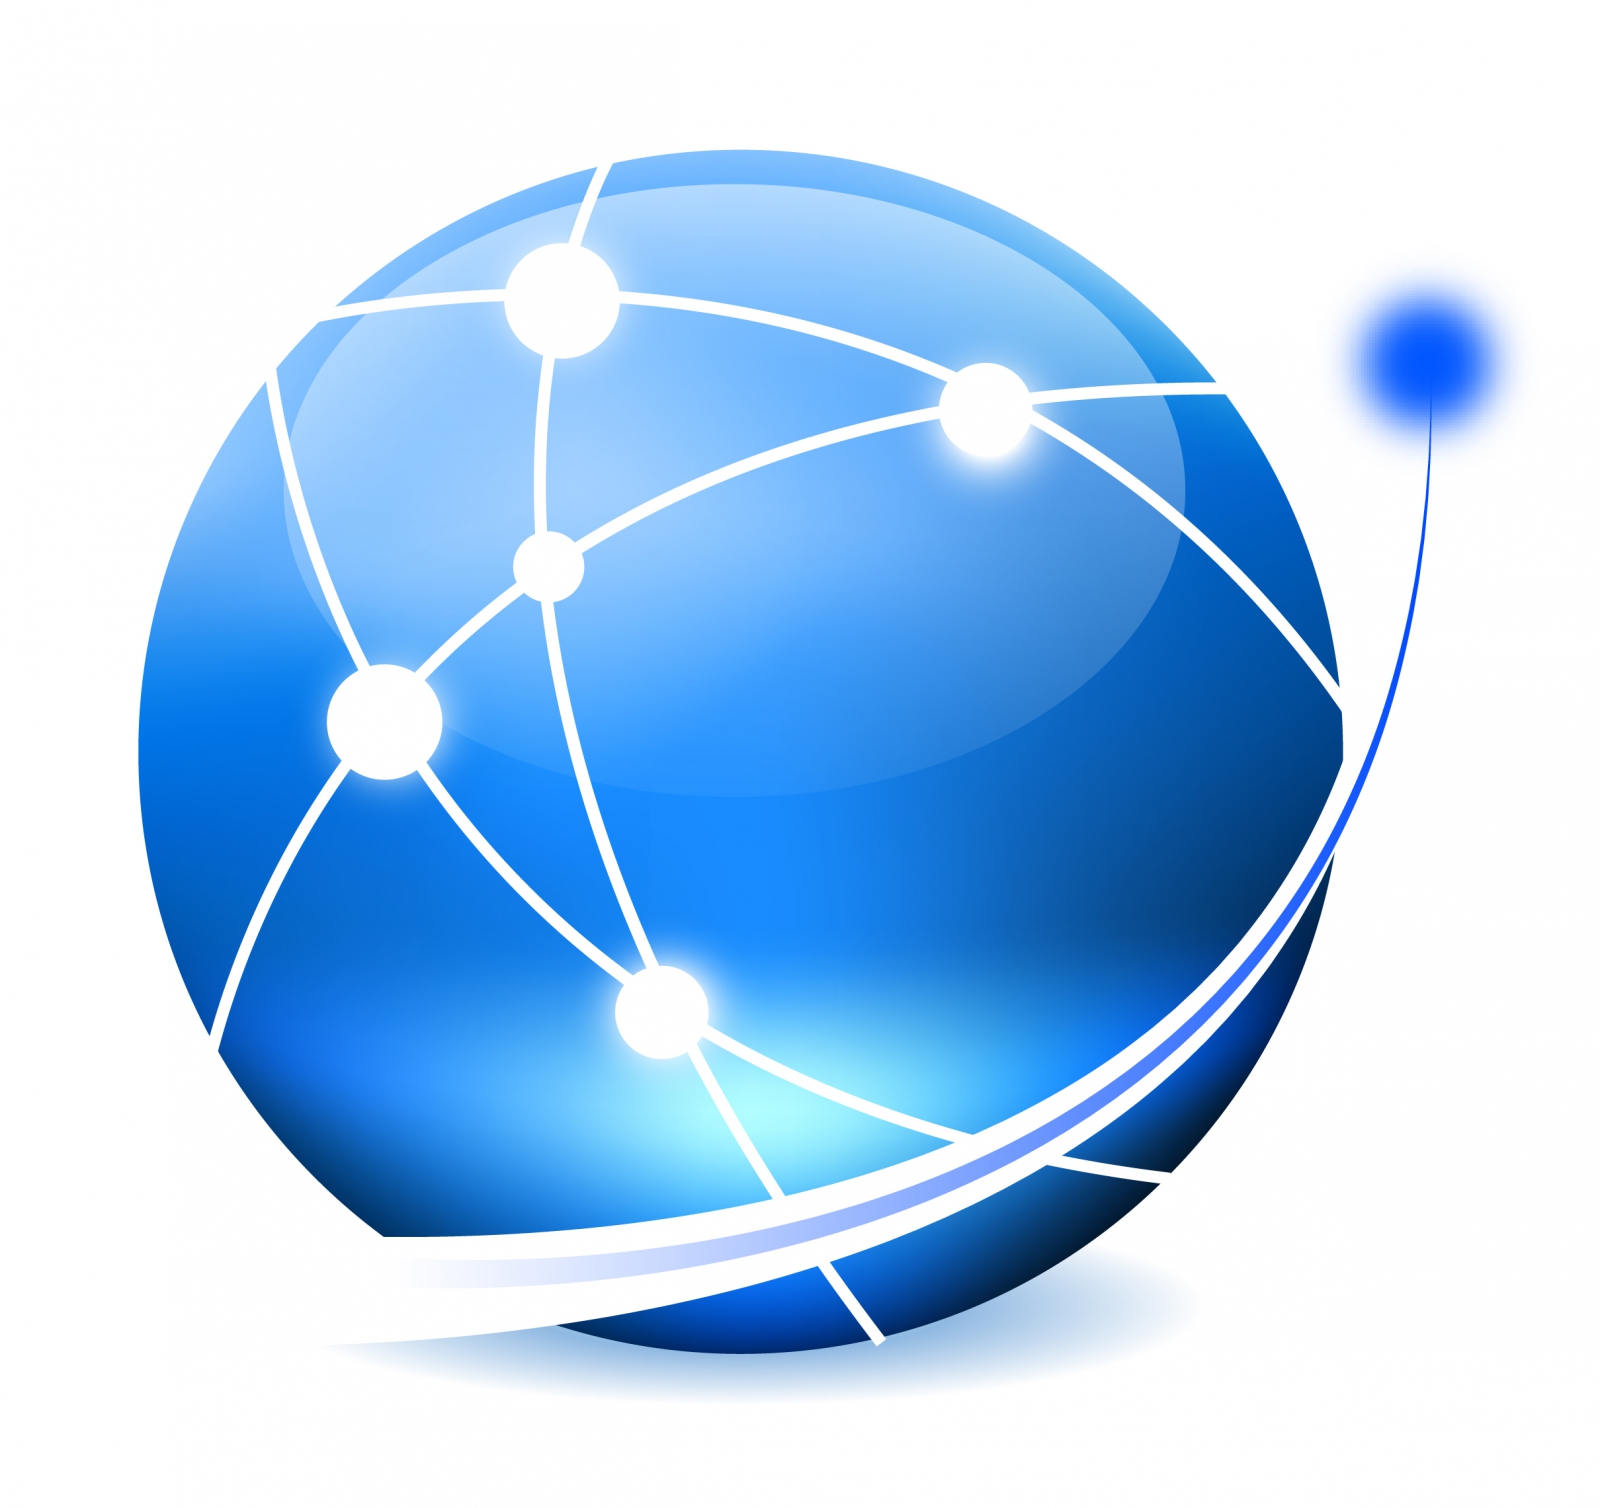 Сеть интернет в круг. Значок интернета. Земной шар логотип. Всемирная сеть вектор. Иконка интернета без фона.